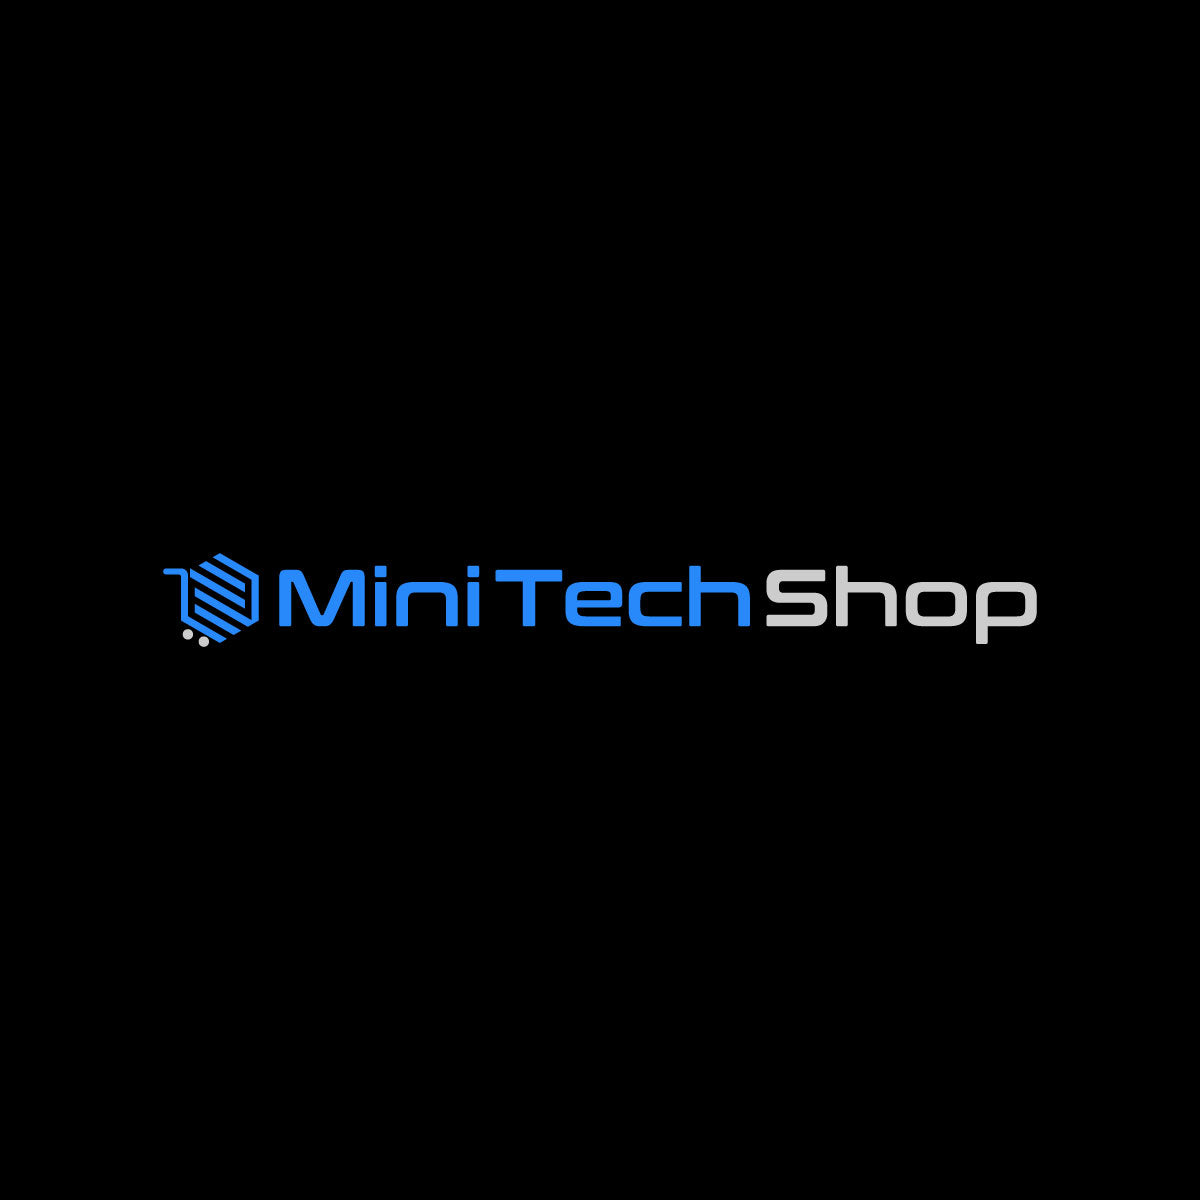 Mini Tech Shop